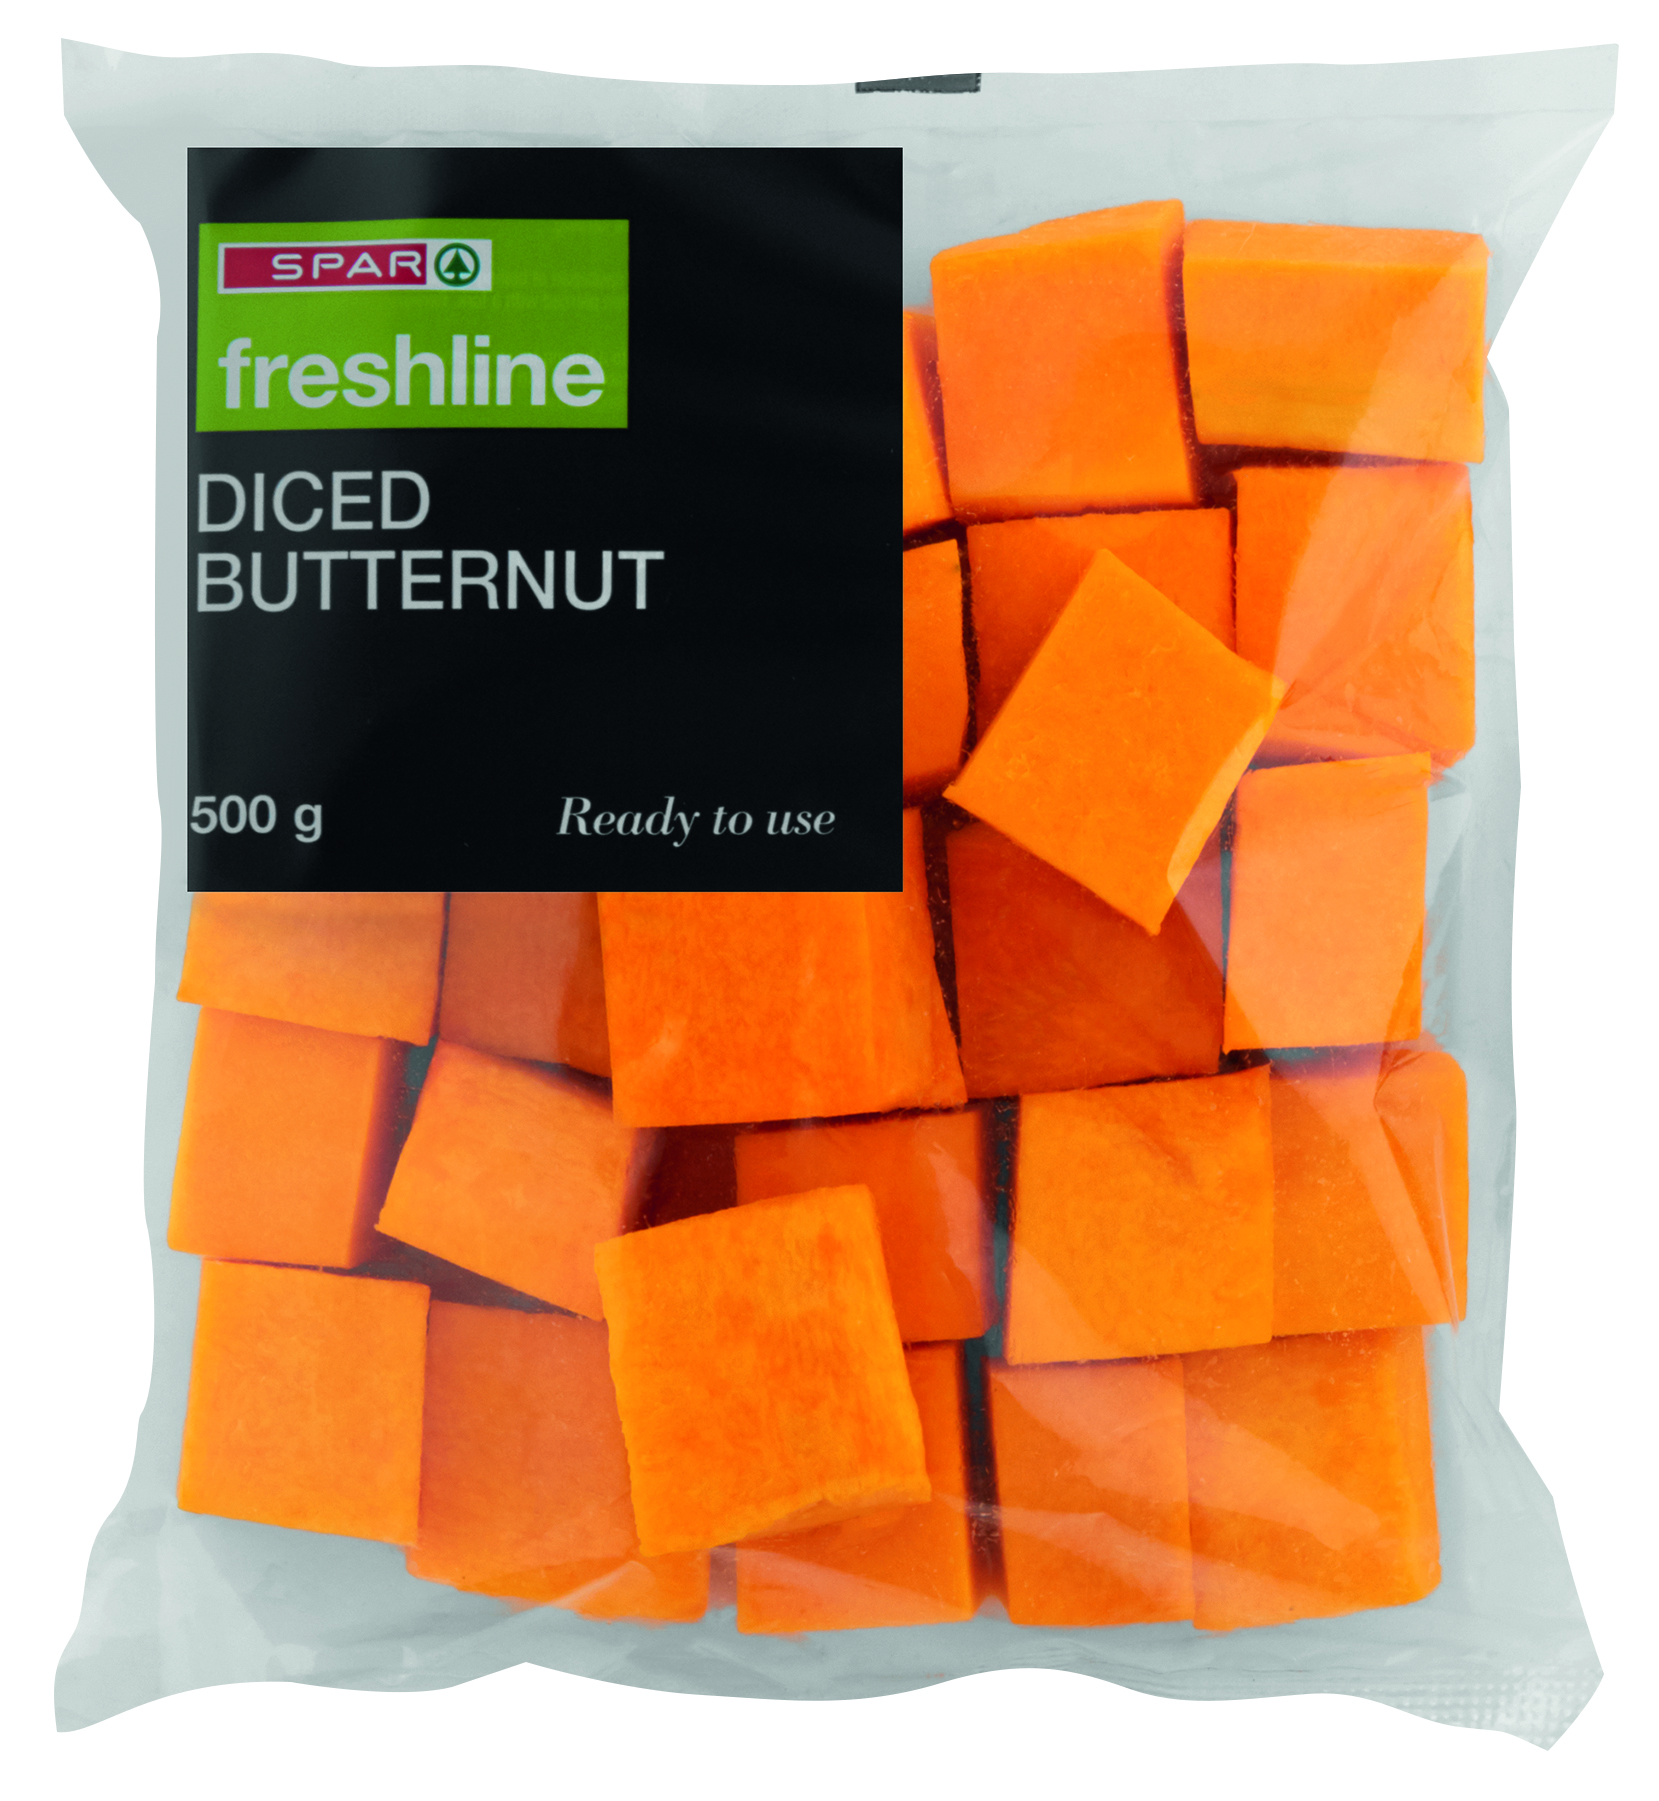 freshline diced butternut